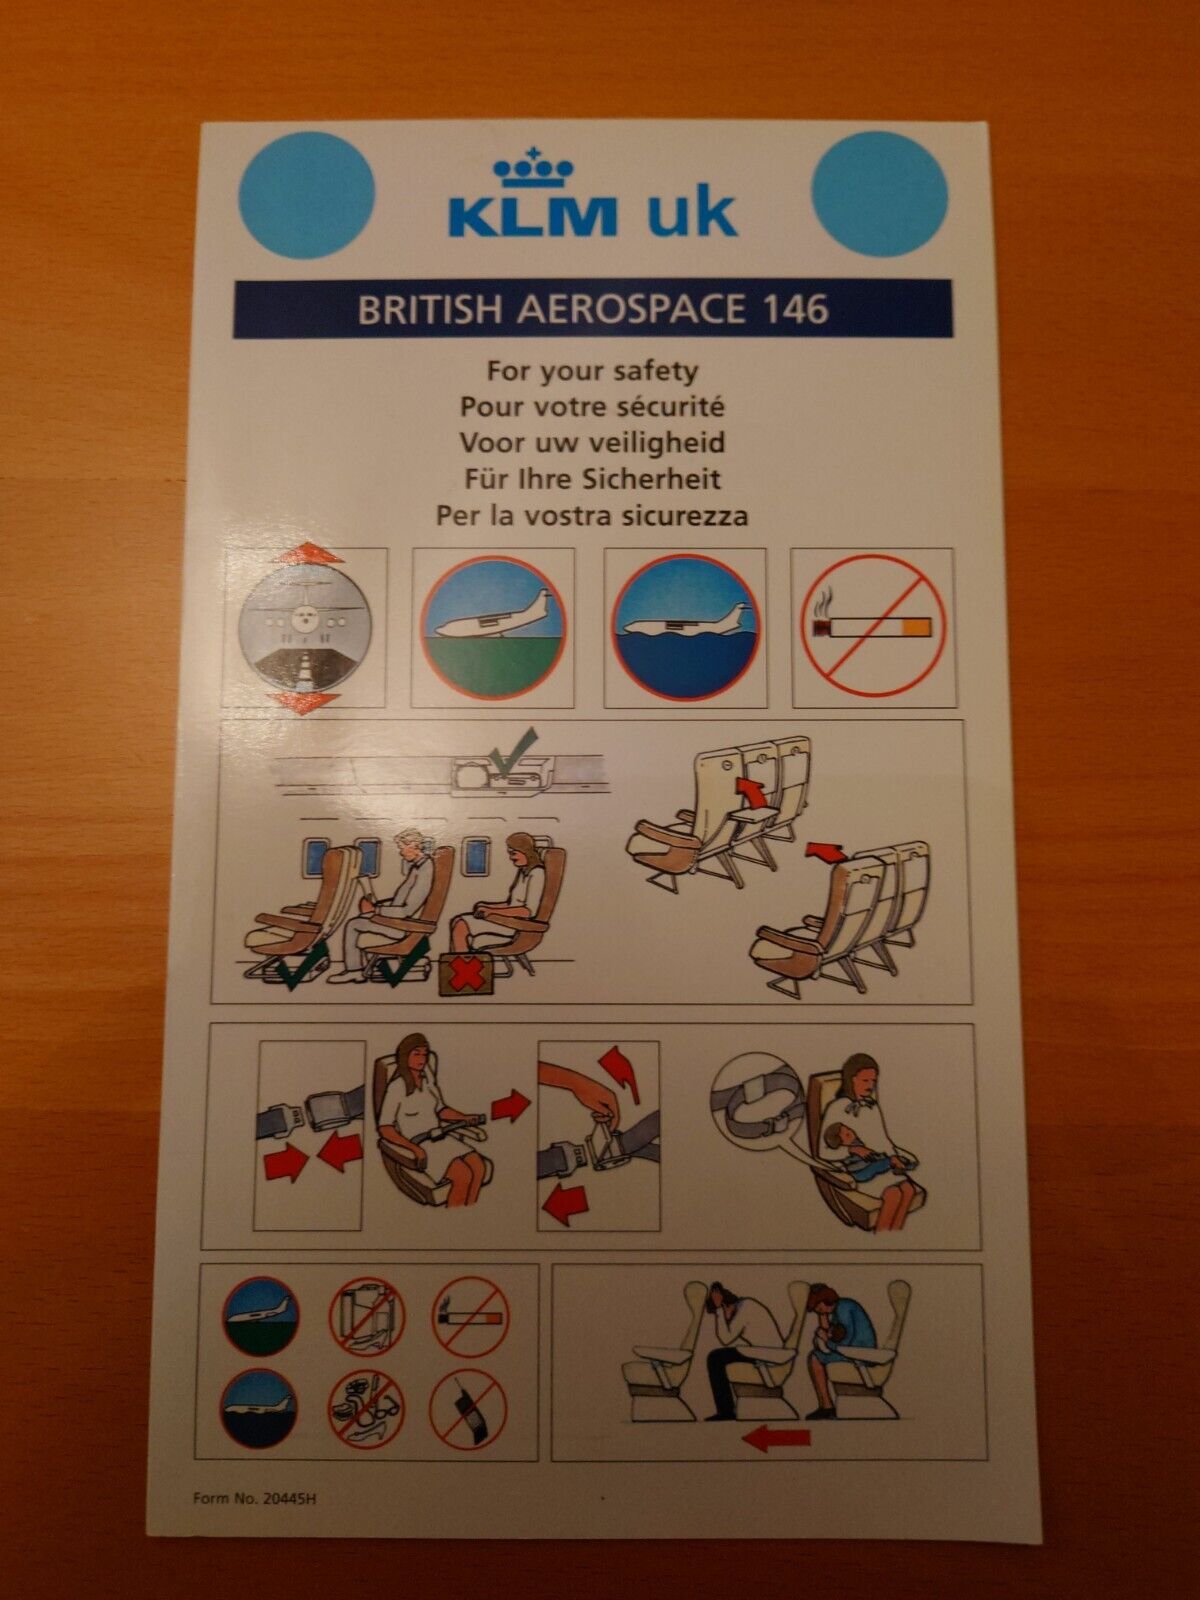 KLM UK BAe 146 20445H SAFETY CARD 